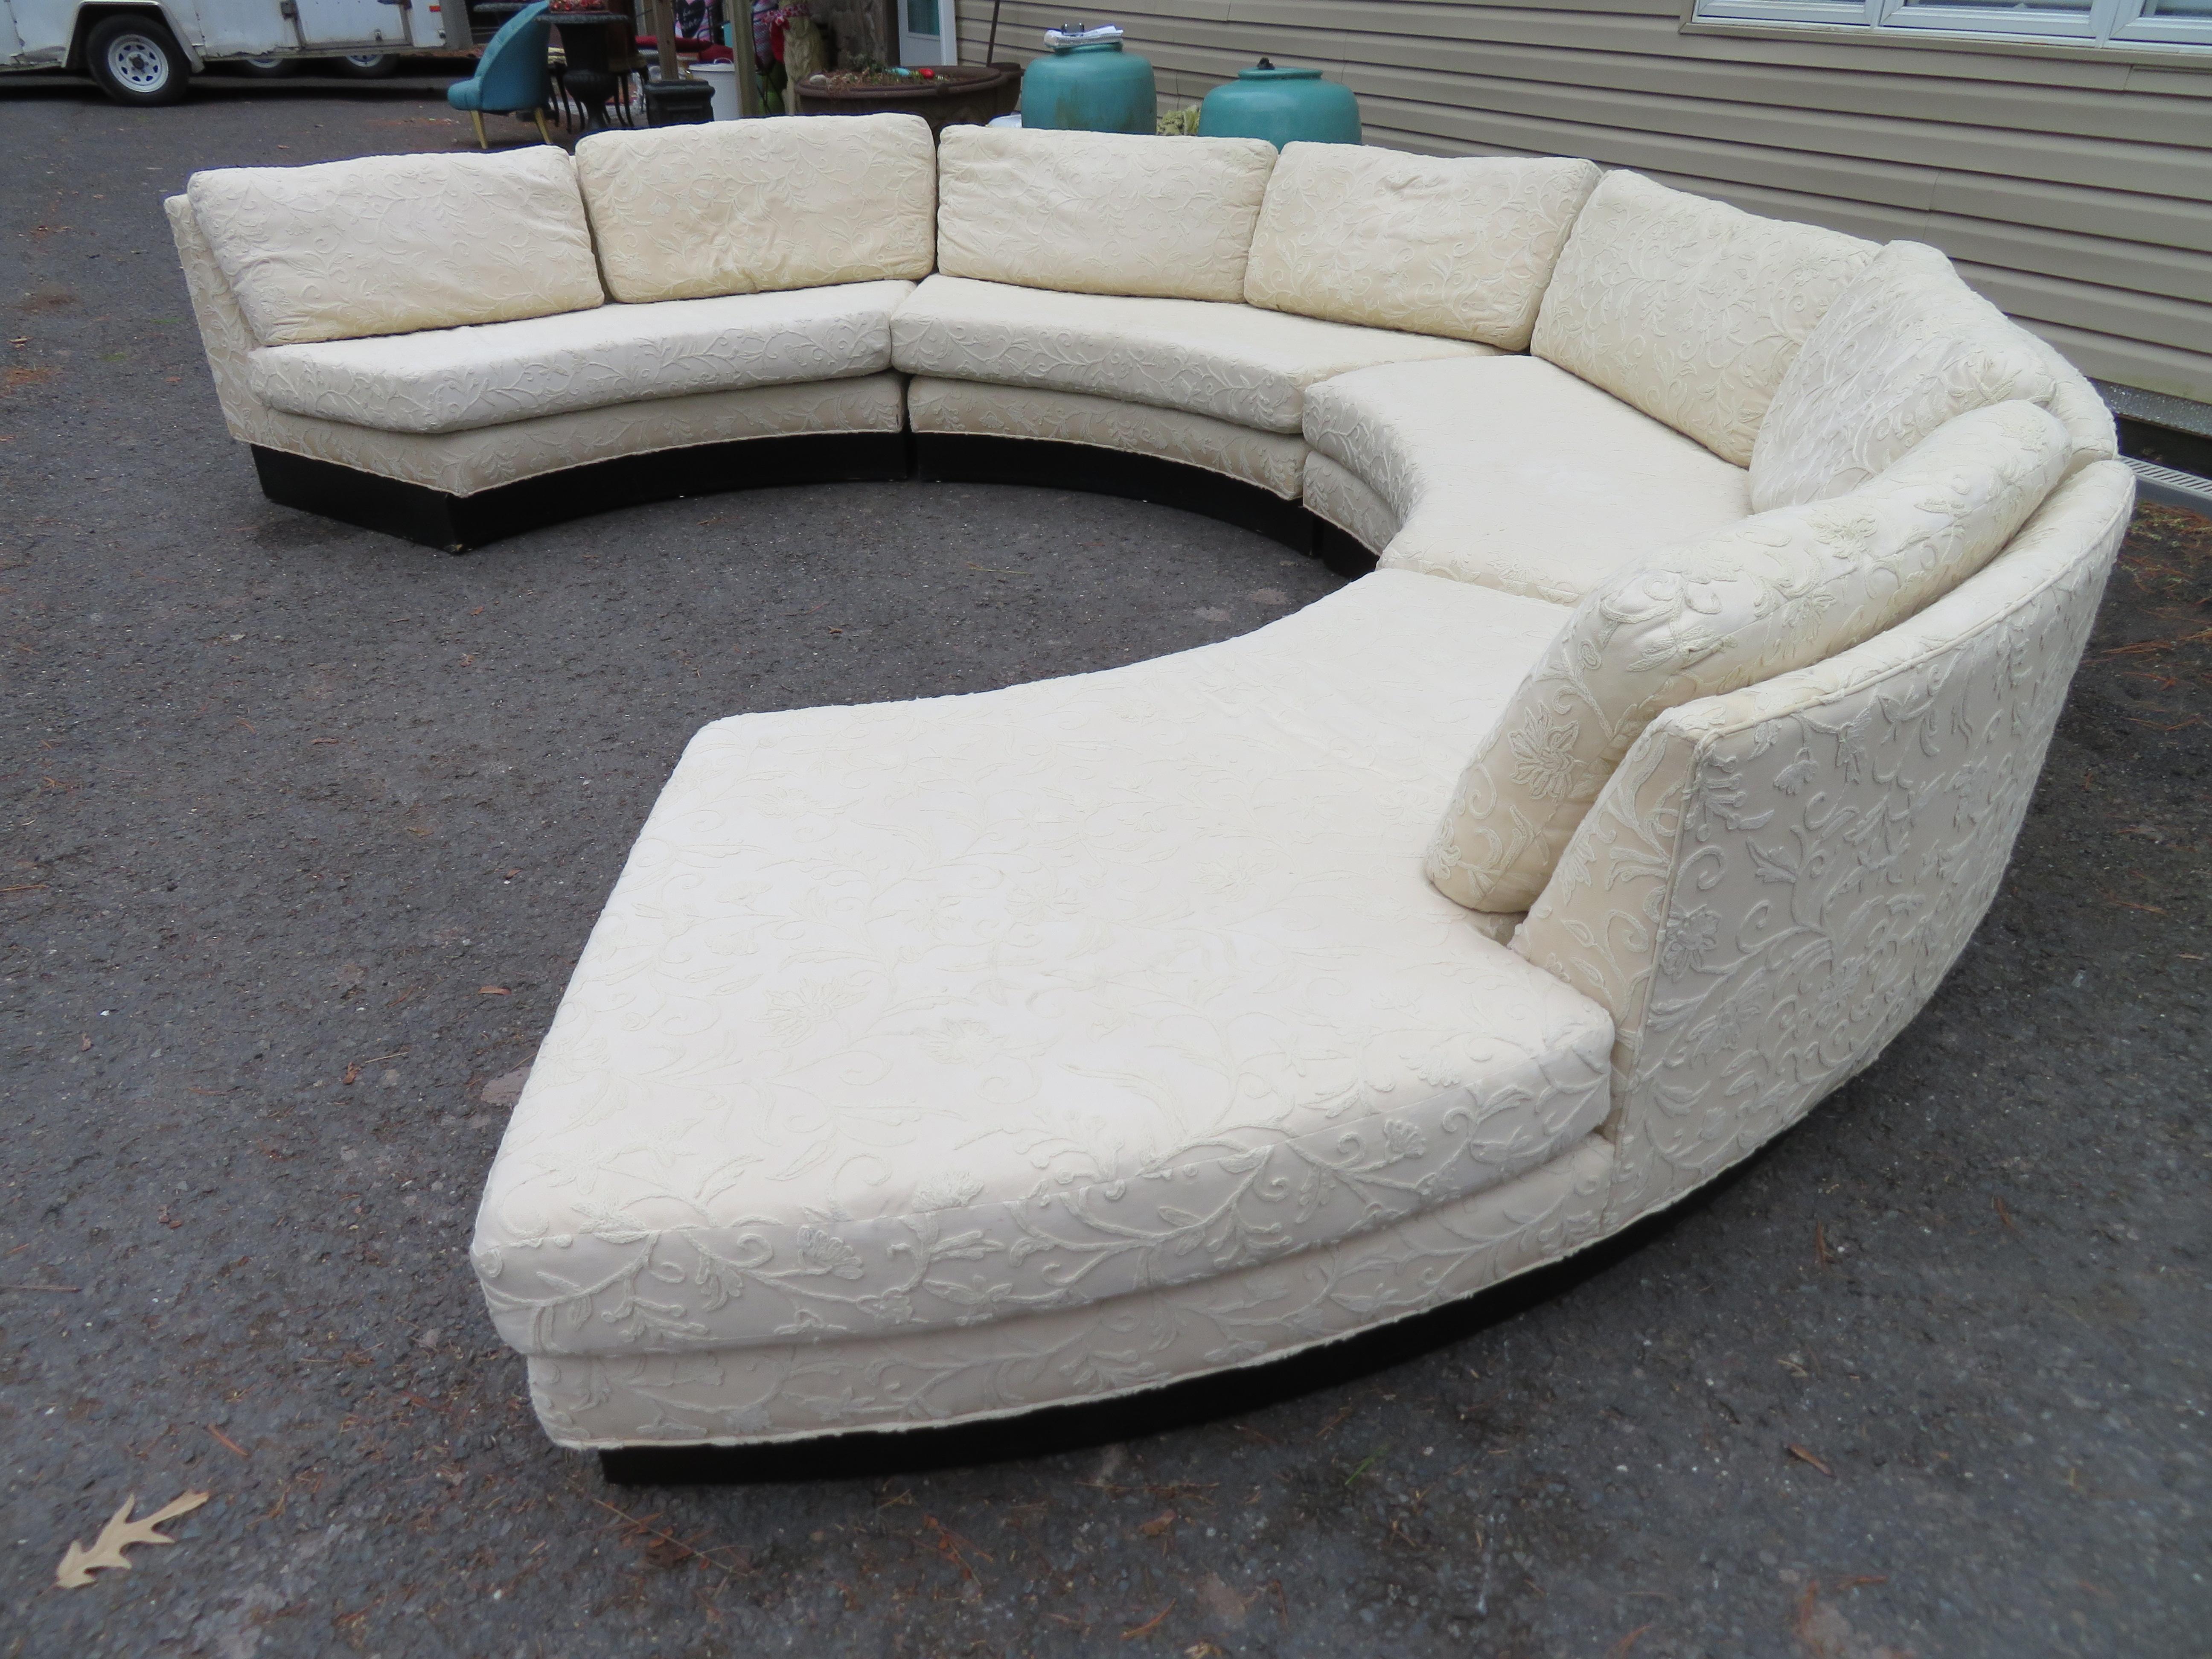 Wunderschönes 4-tlg. kreisförmiges Erwin-Lambeth-Sectional-Sofa. Dieses Sektionssofa im Vintage-Stil ist durch und durch hochwertig, von den daunengefüllten Sitzkissen bis zum dicken ebonisierten Sockel - sehr stilvoll. Wir lieben den offenen